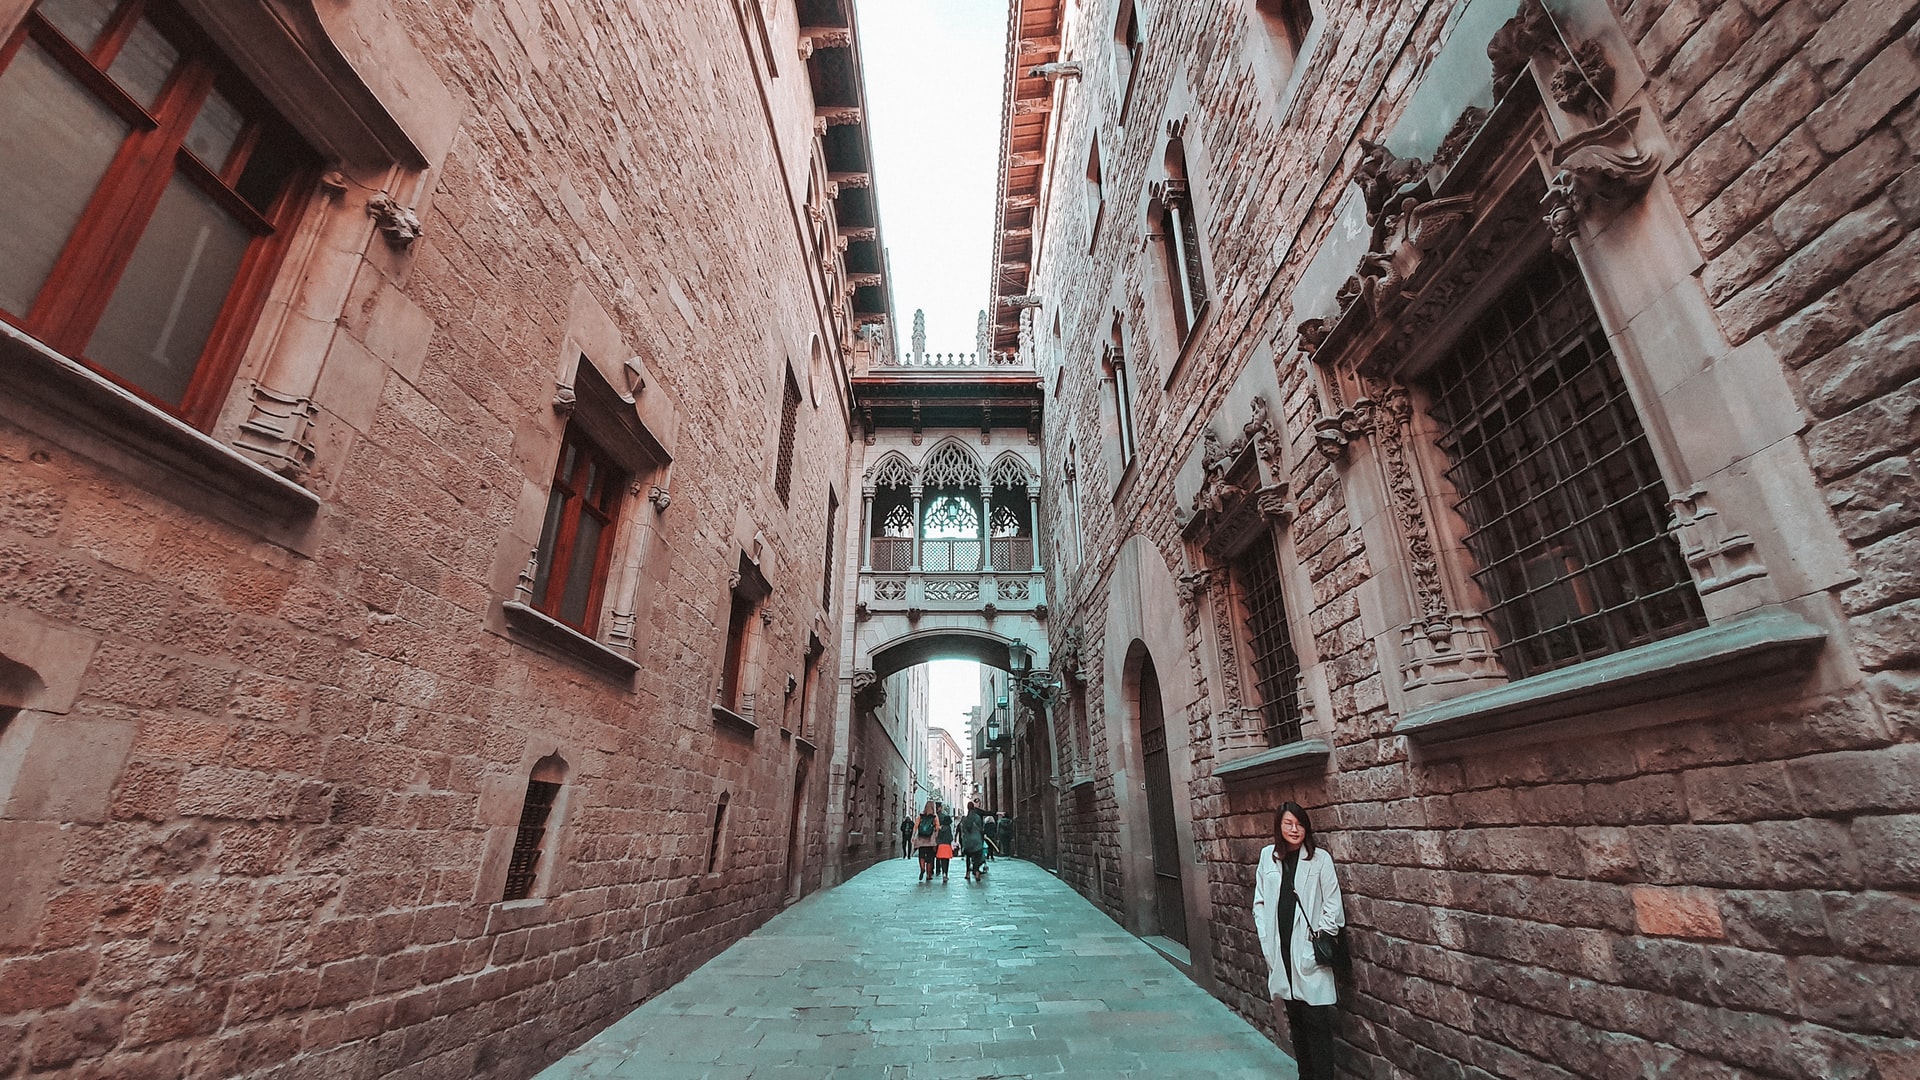 Famoso per il suo fascino medievale, il Quartiere Gotico di Barcellona ospita alcune delle attrazioni storiche più impressionanti della capitale catalana.